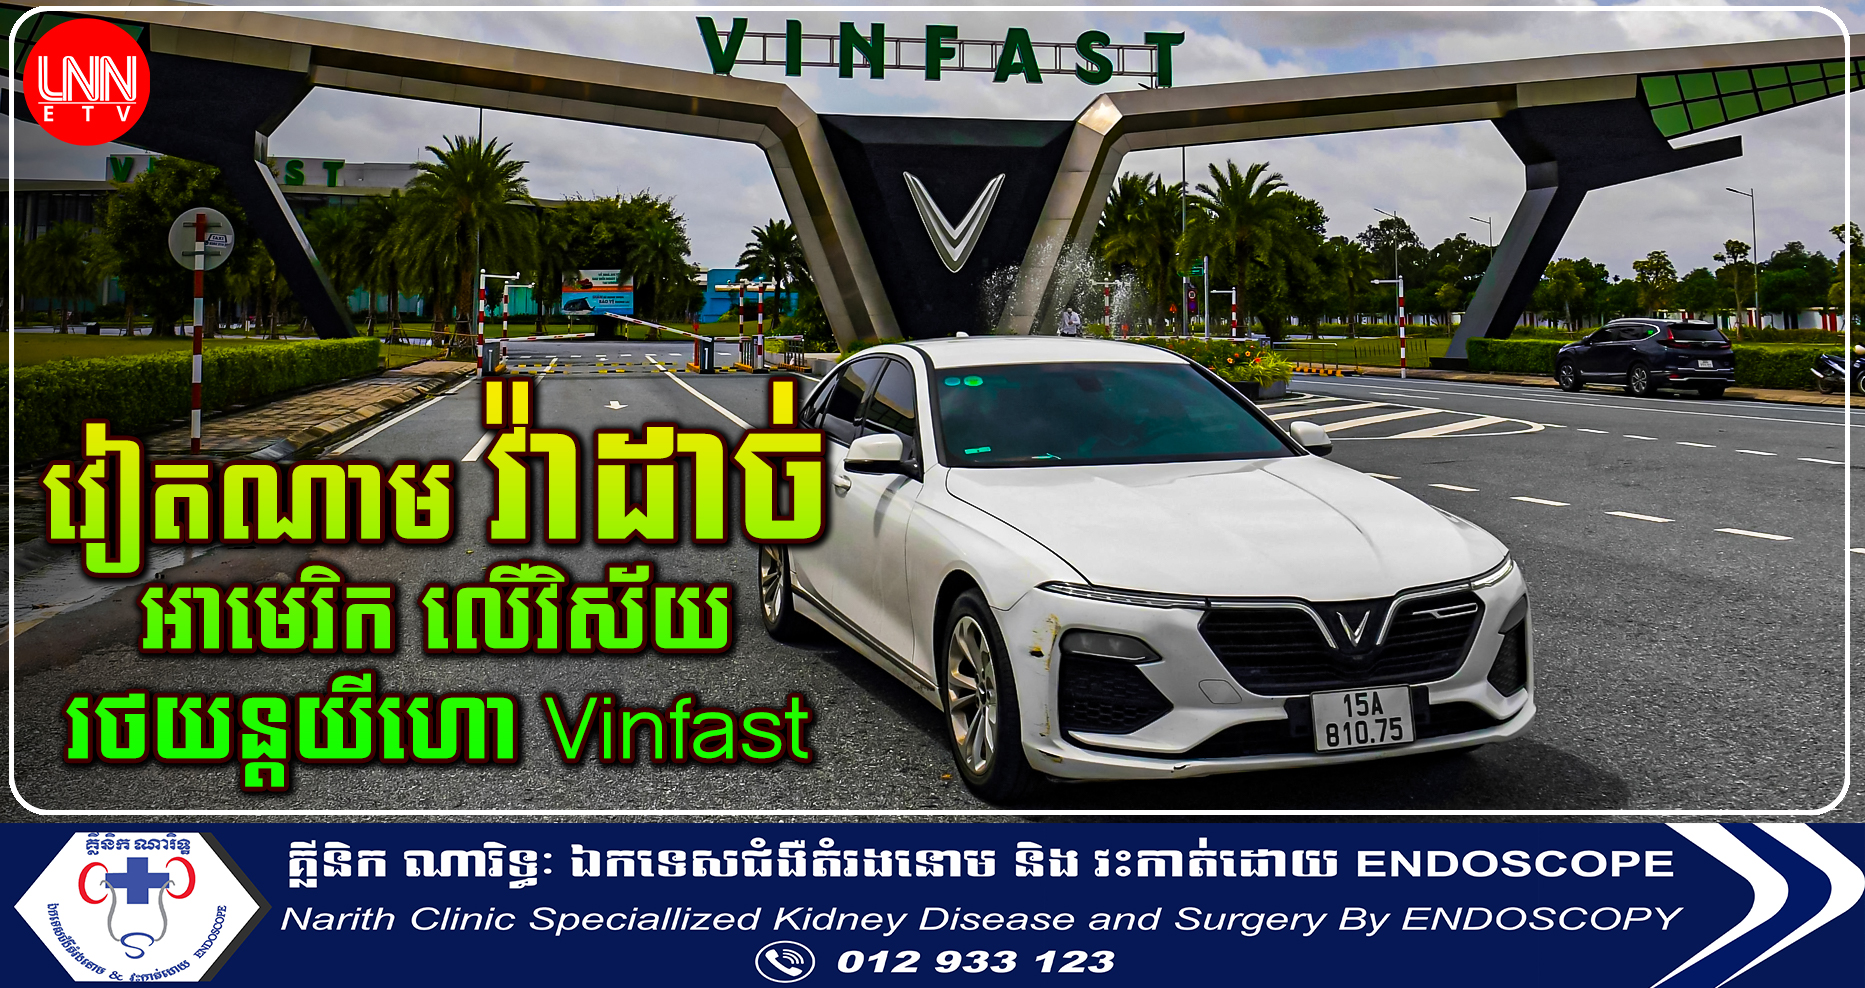 តម្លៃភាគហ៊ុនក្រុមហ៊ុនរថយន្តវៀតណាម VinFast កើនដល់ $៨៥,៥ ពាន់លានដុល្លារ វ៉ាដាច់ Mercedes, Honda, Ford, និង Tesla